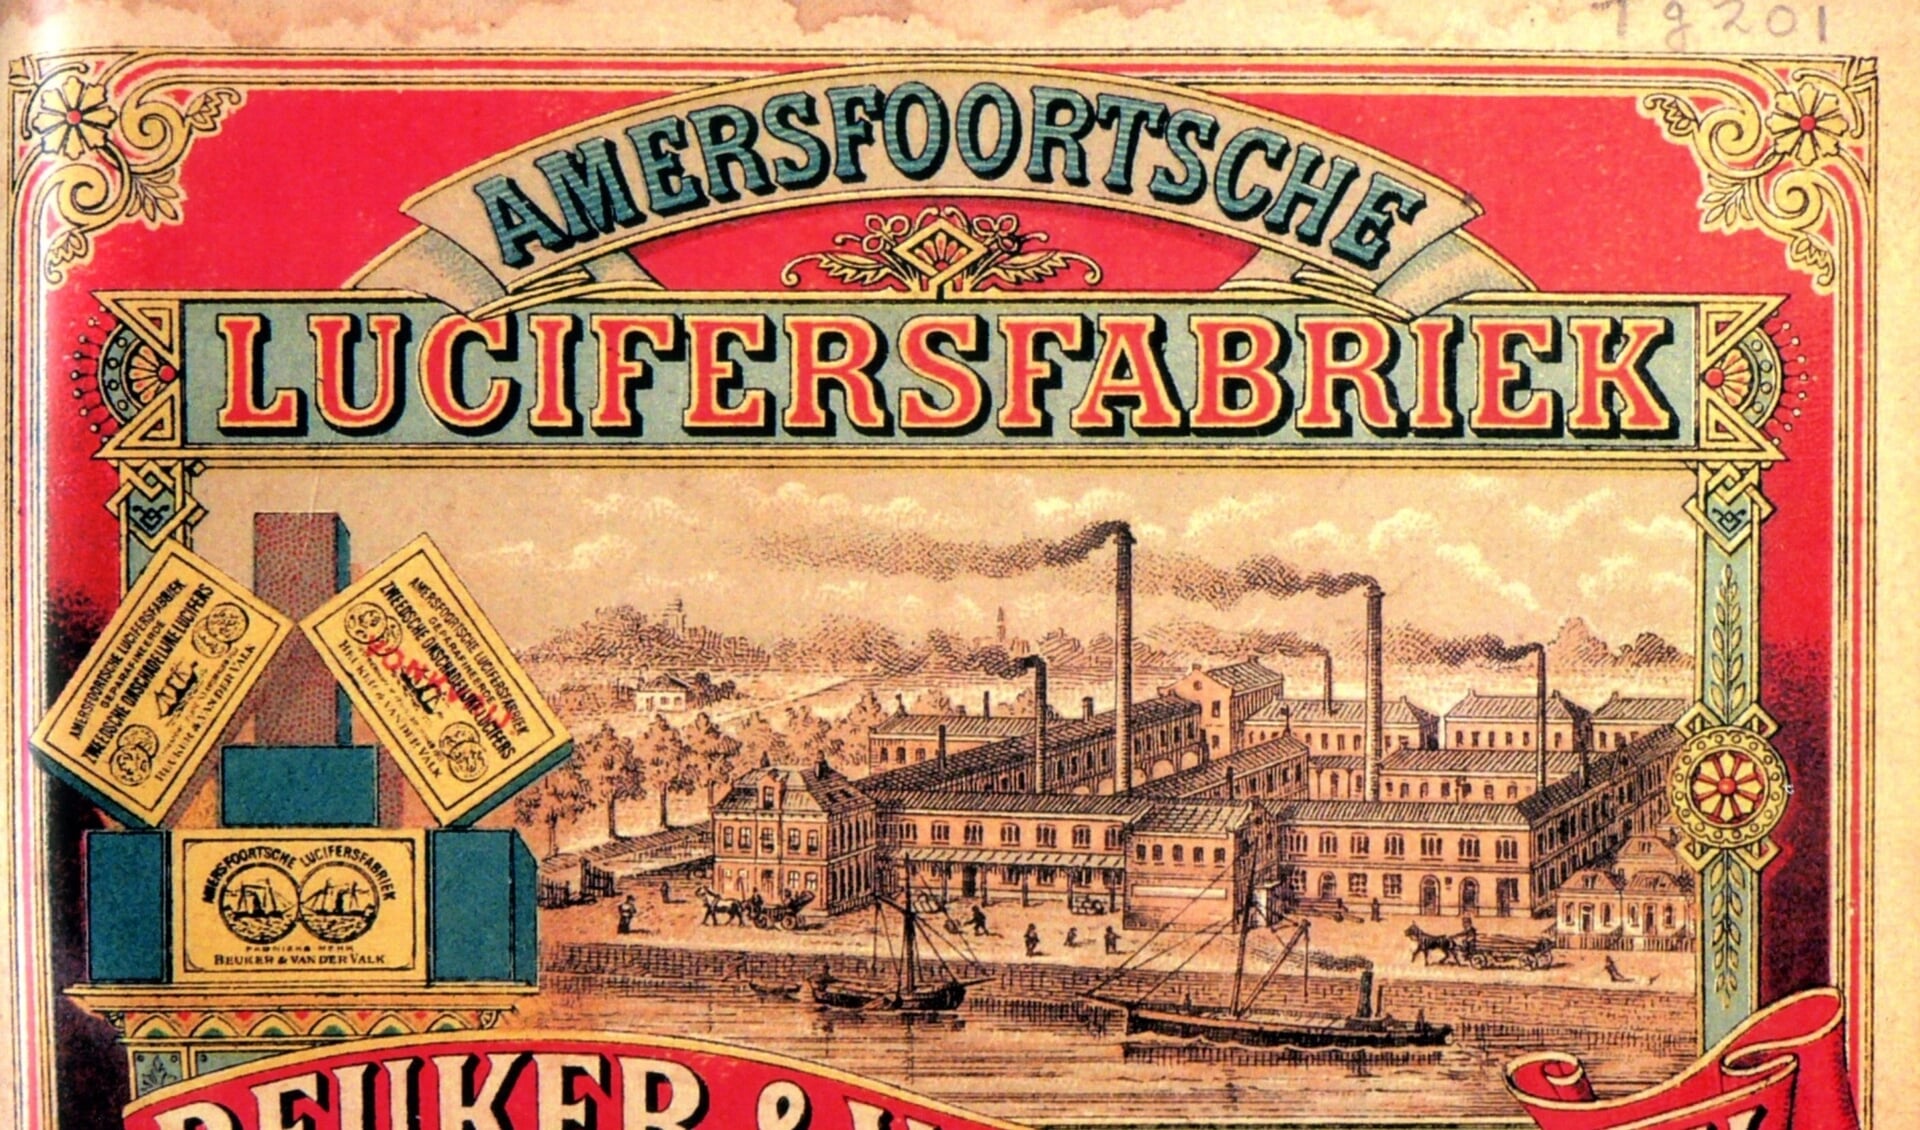 1885 Op het Pak-etiket van Stoomluciferfabriek Beuker & van der Valk ( later Warner Jenkinson) wordt een enorm fabriekscomplex afgebeeld met vele schoorstenen